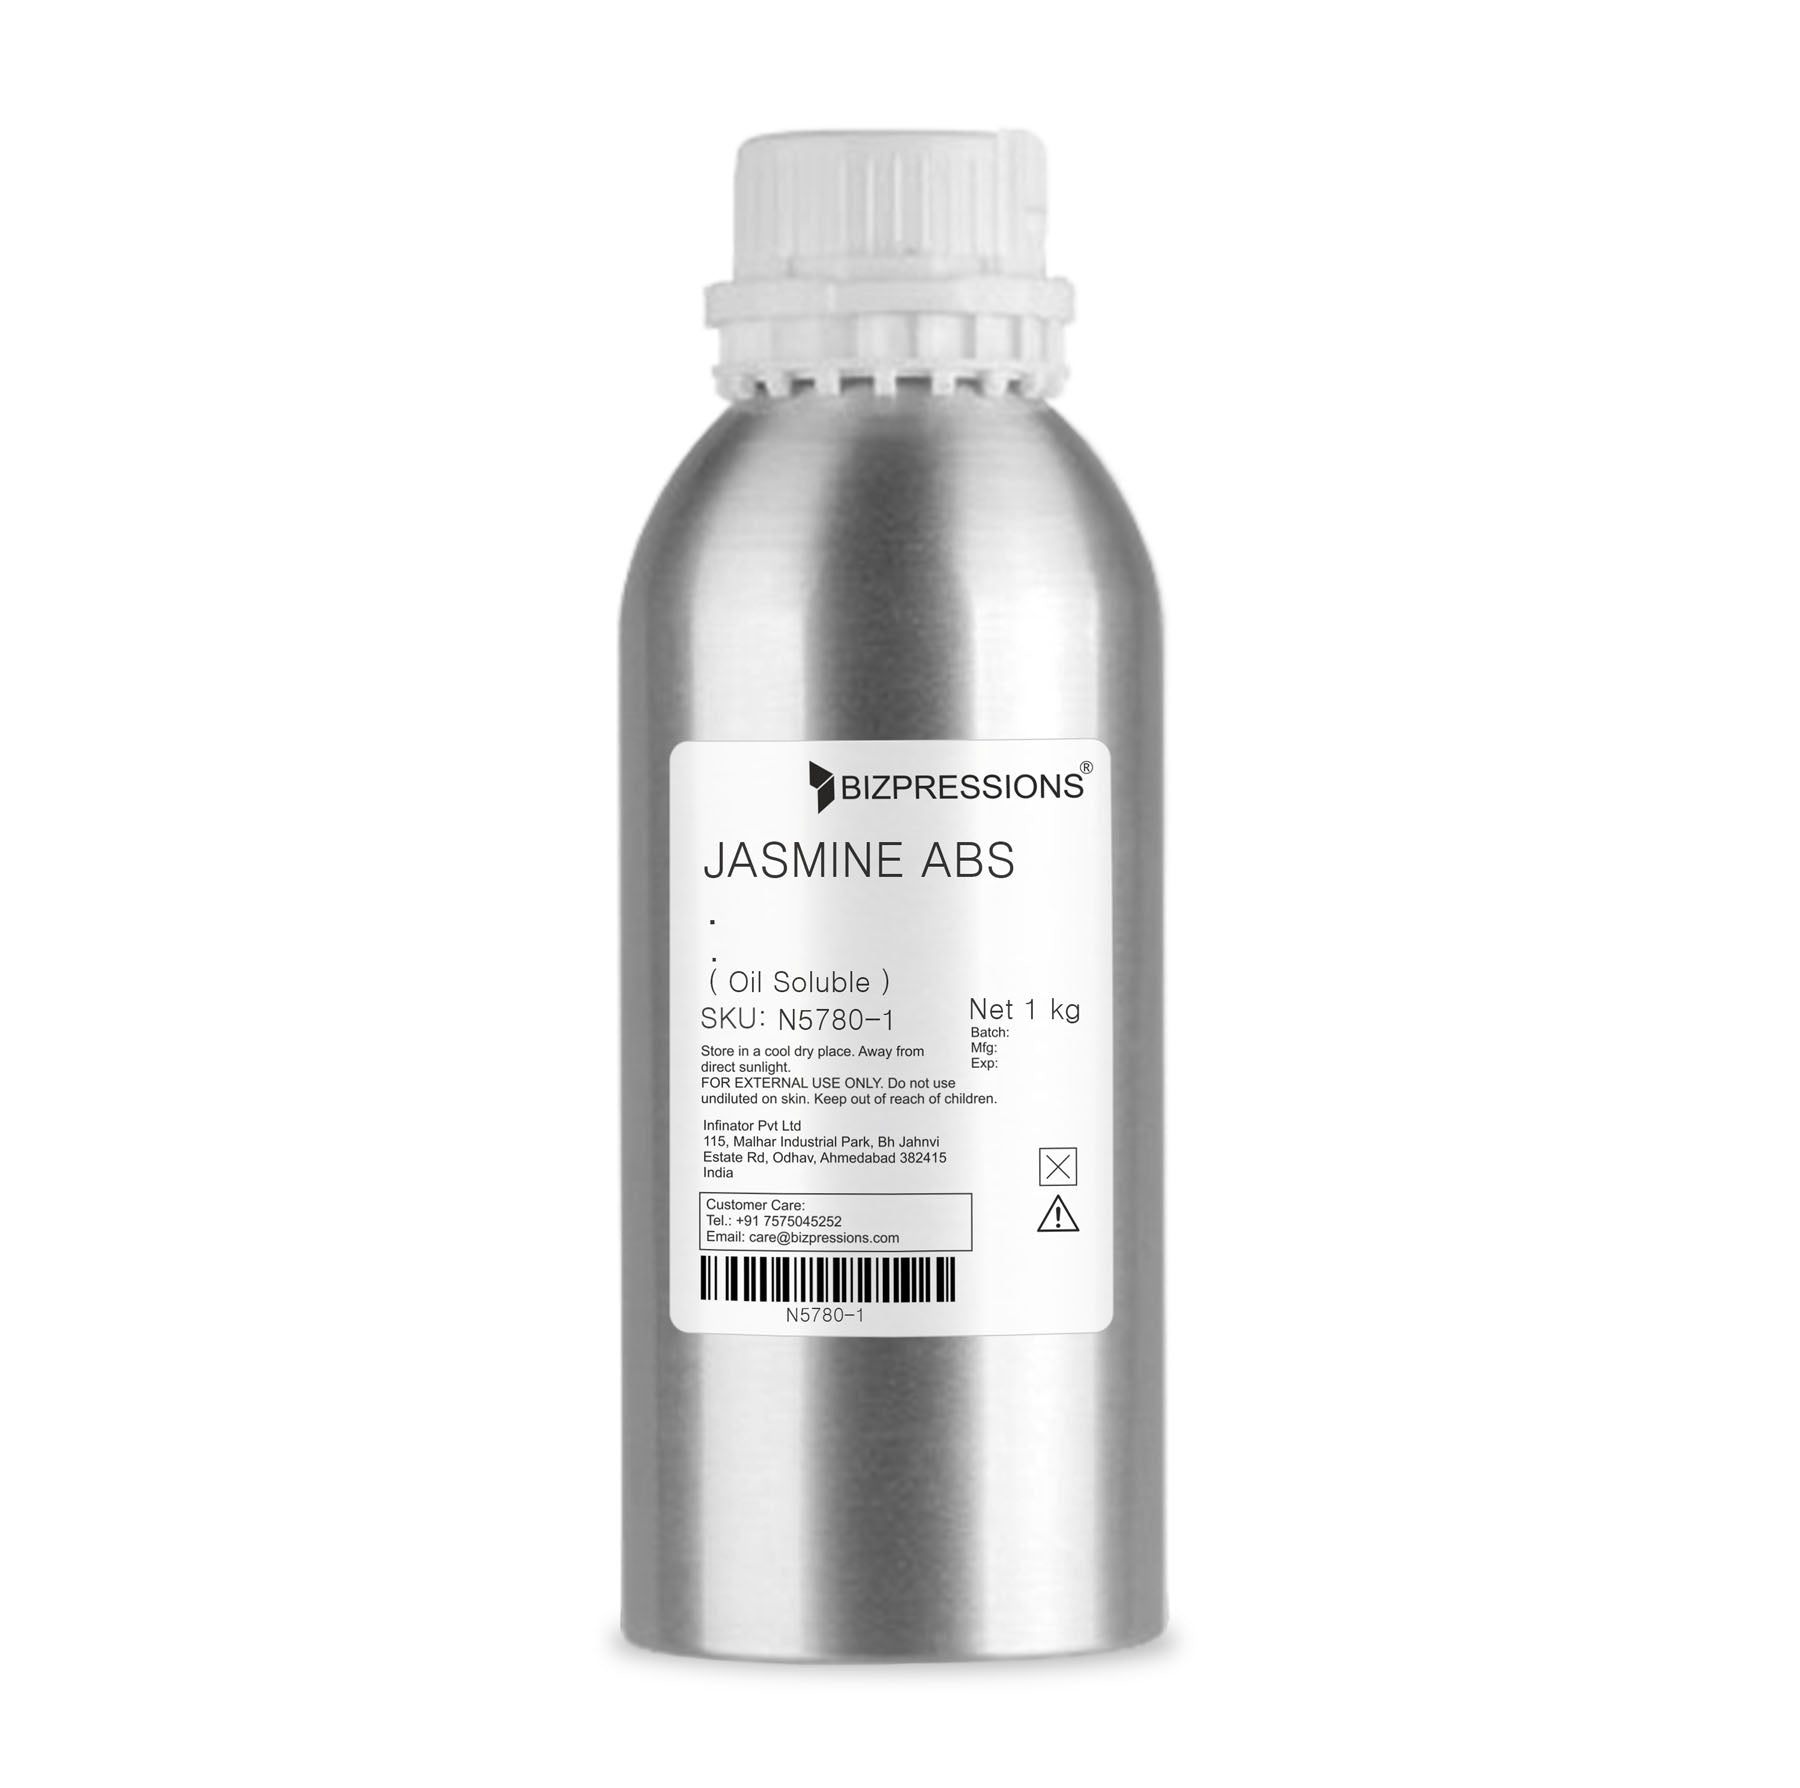 JASMINE ABS - Fragrance ( Oil Soluble ) - 1 kg